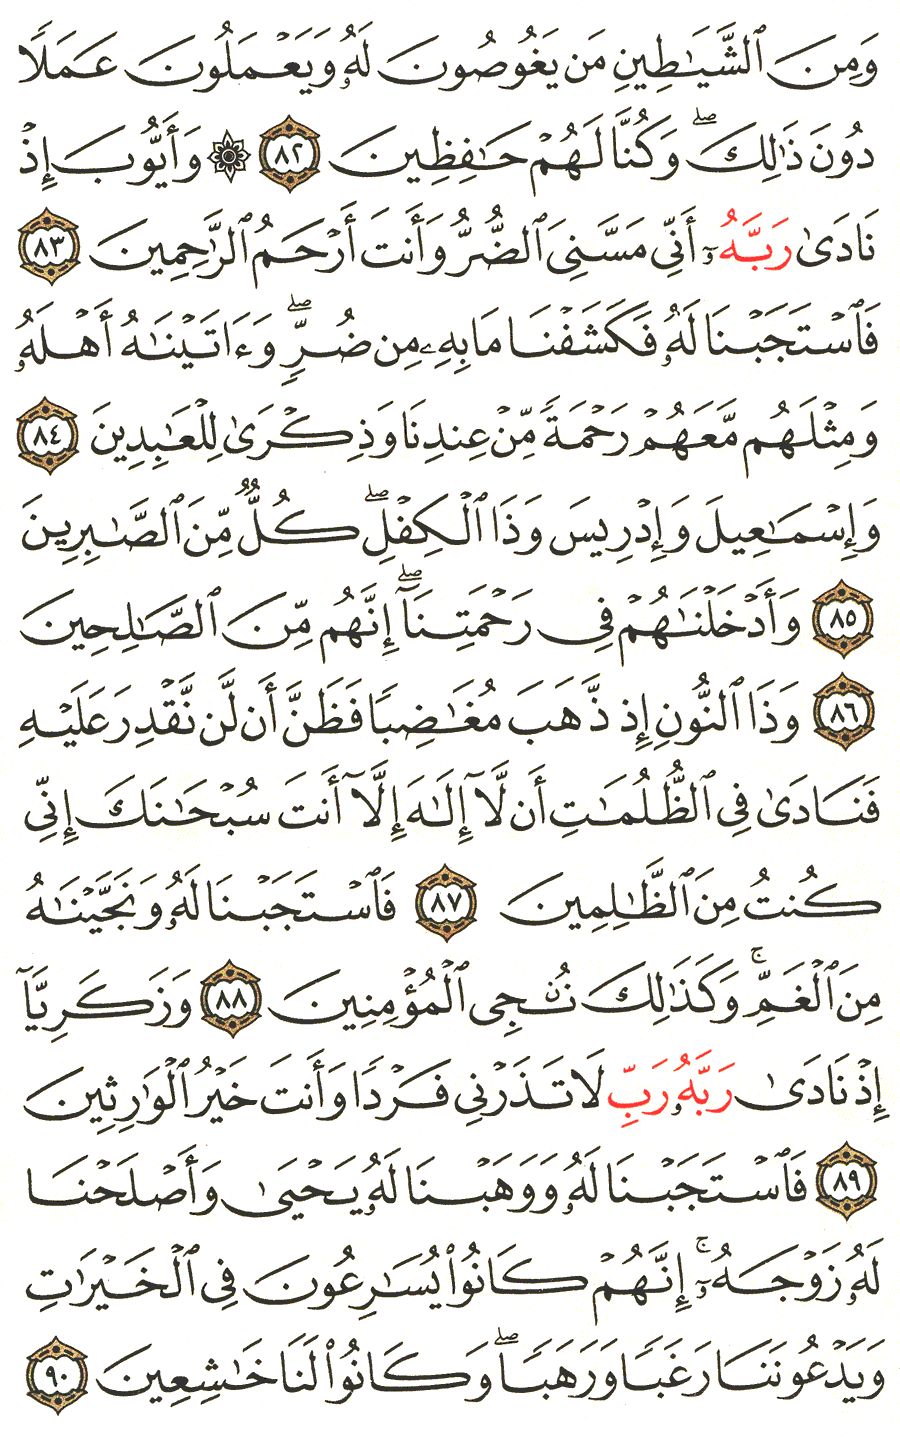 الصفحة رقم 329  من القرآن الكريم مكتوبة من المصحف